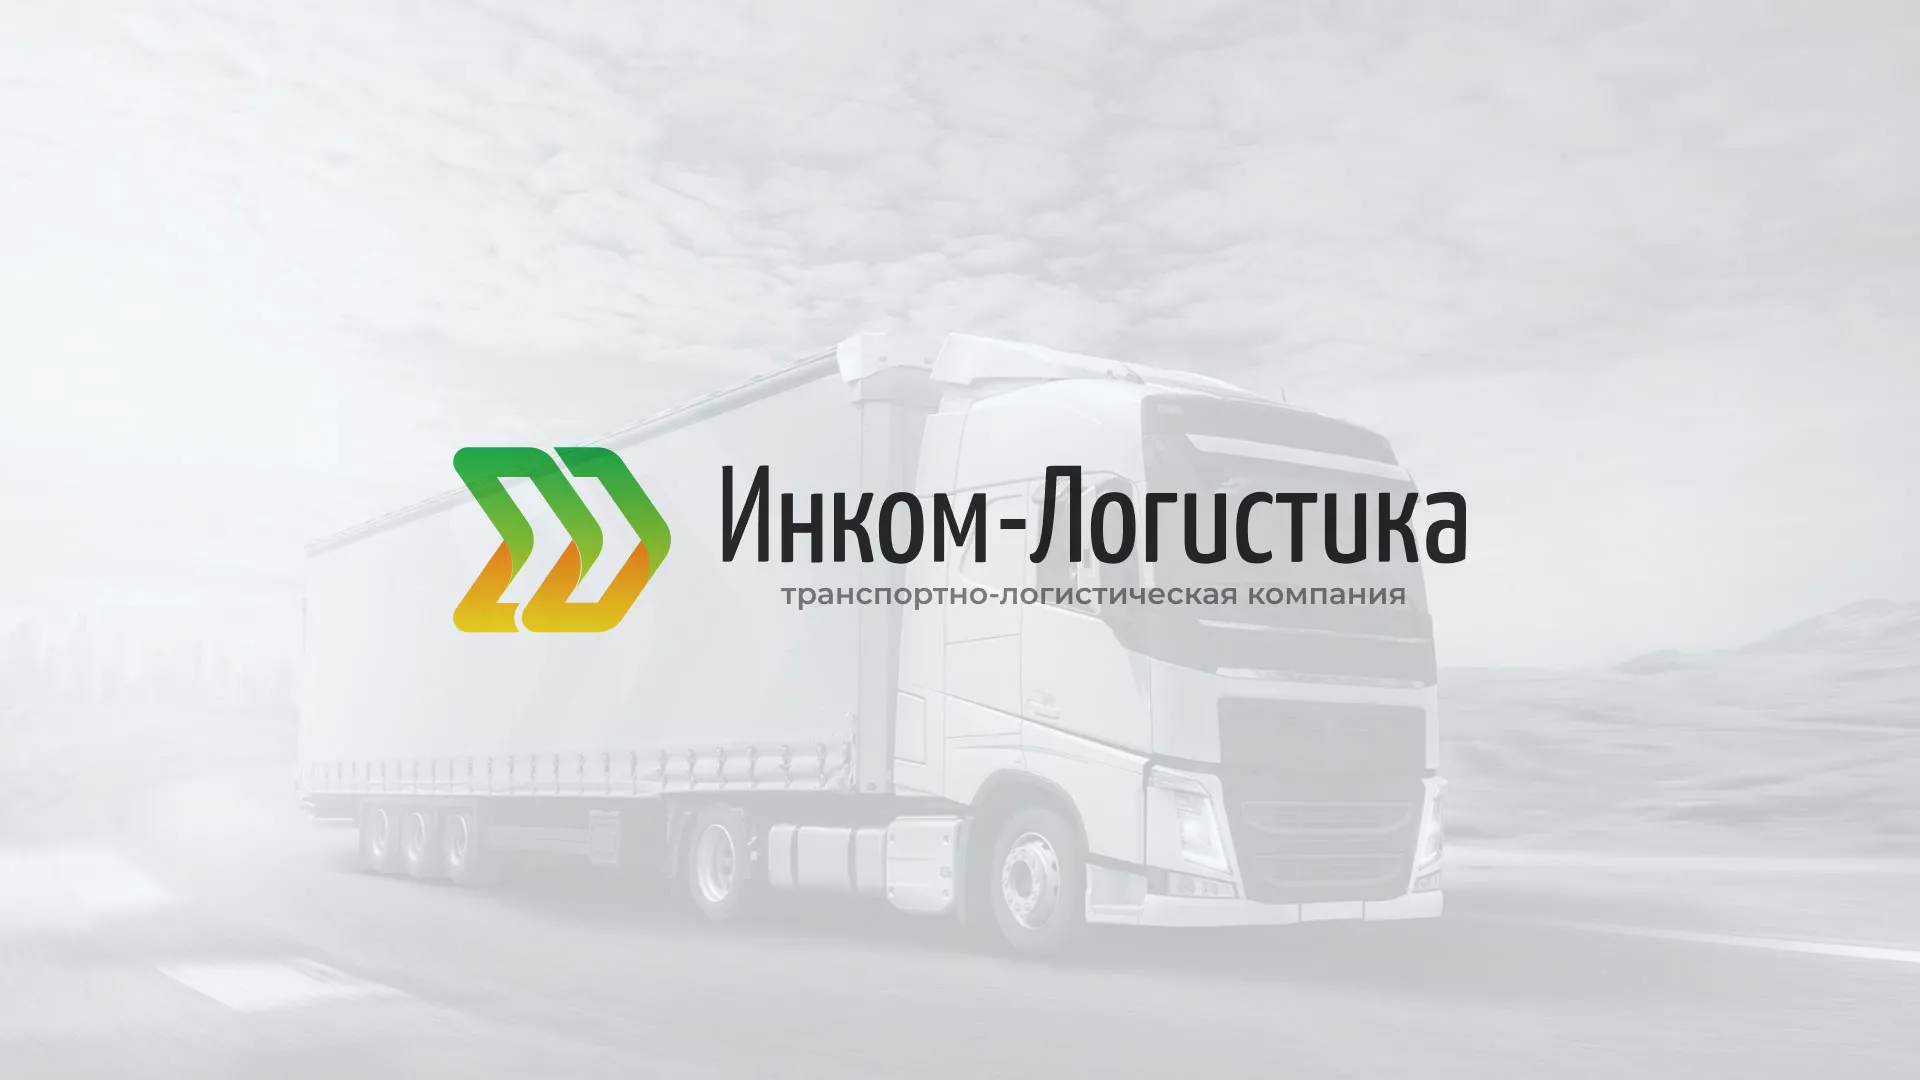 Разработка логотипа и сайта компании «Инком-Логистика» в Ефремове